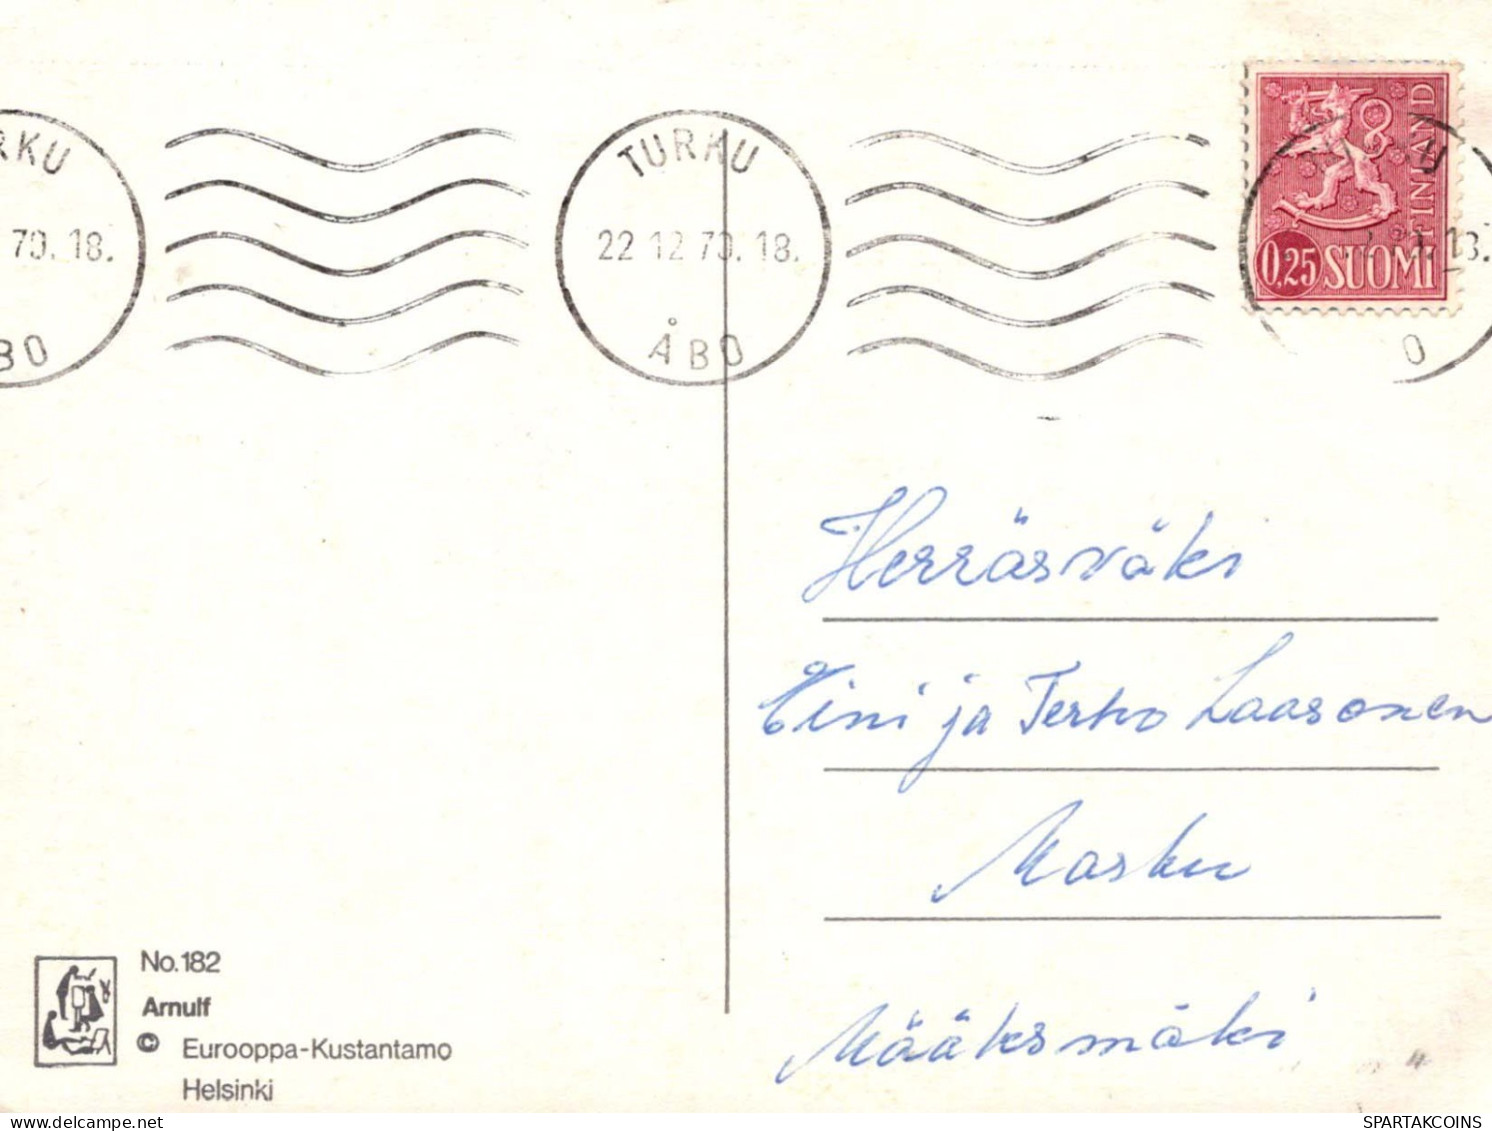 FLEURS Vintage Carte Postale CPSM #PAR799.FR - Fleurs